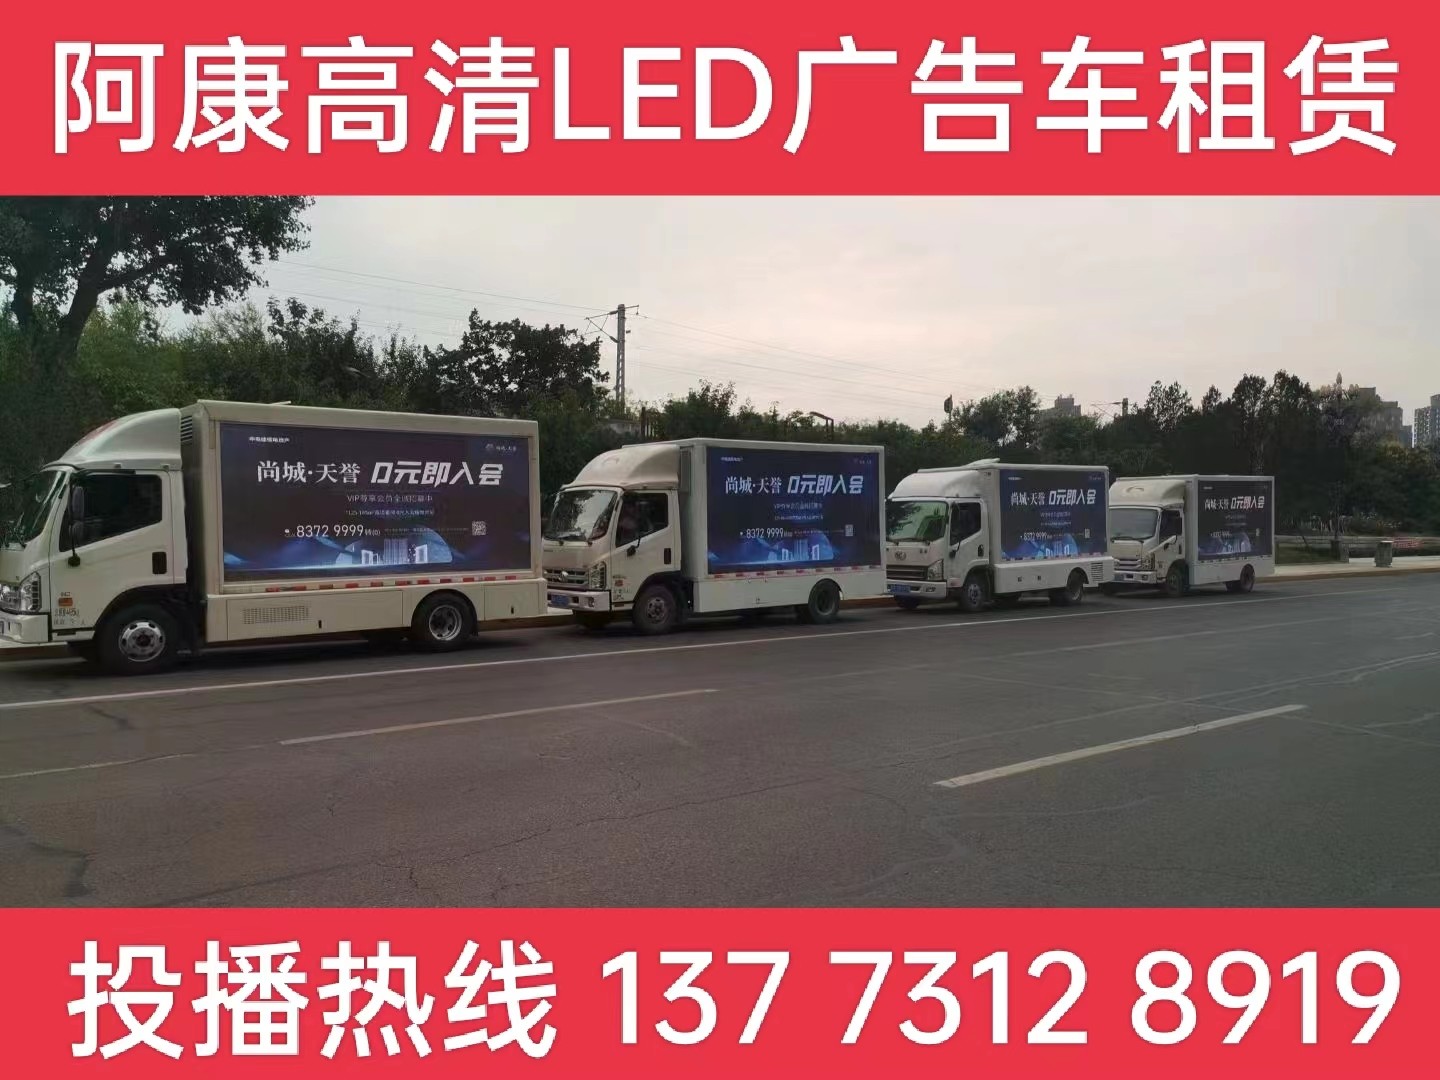 宜兴LED广告车出租公司